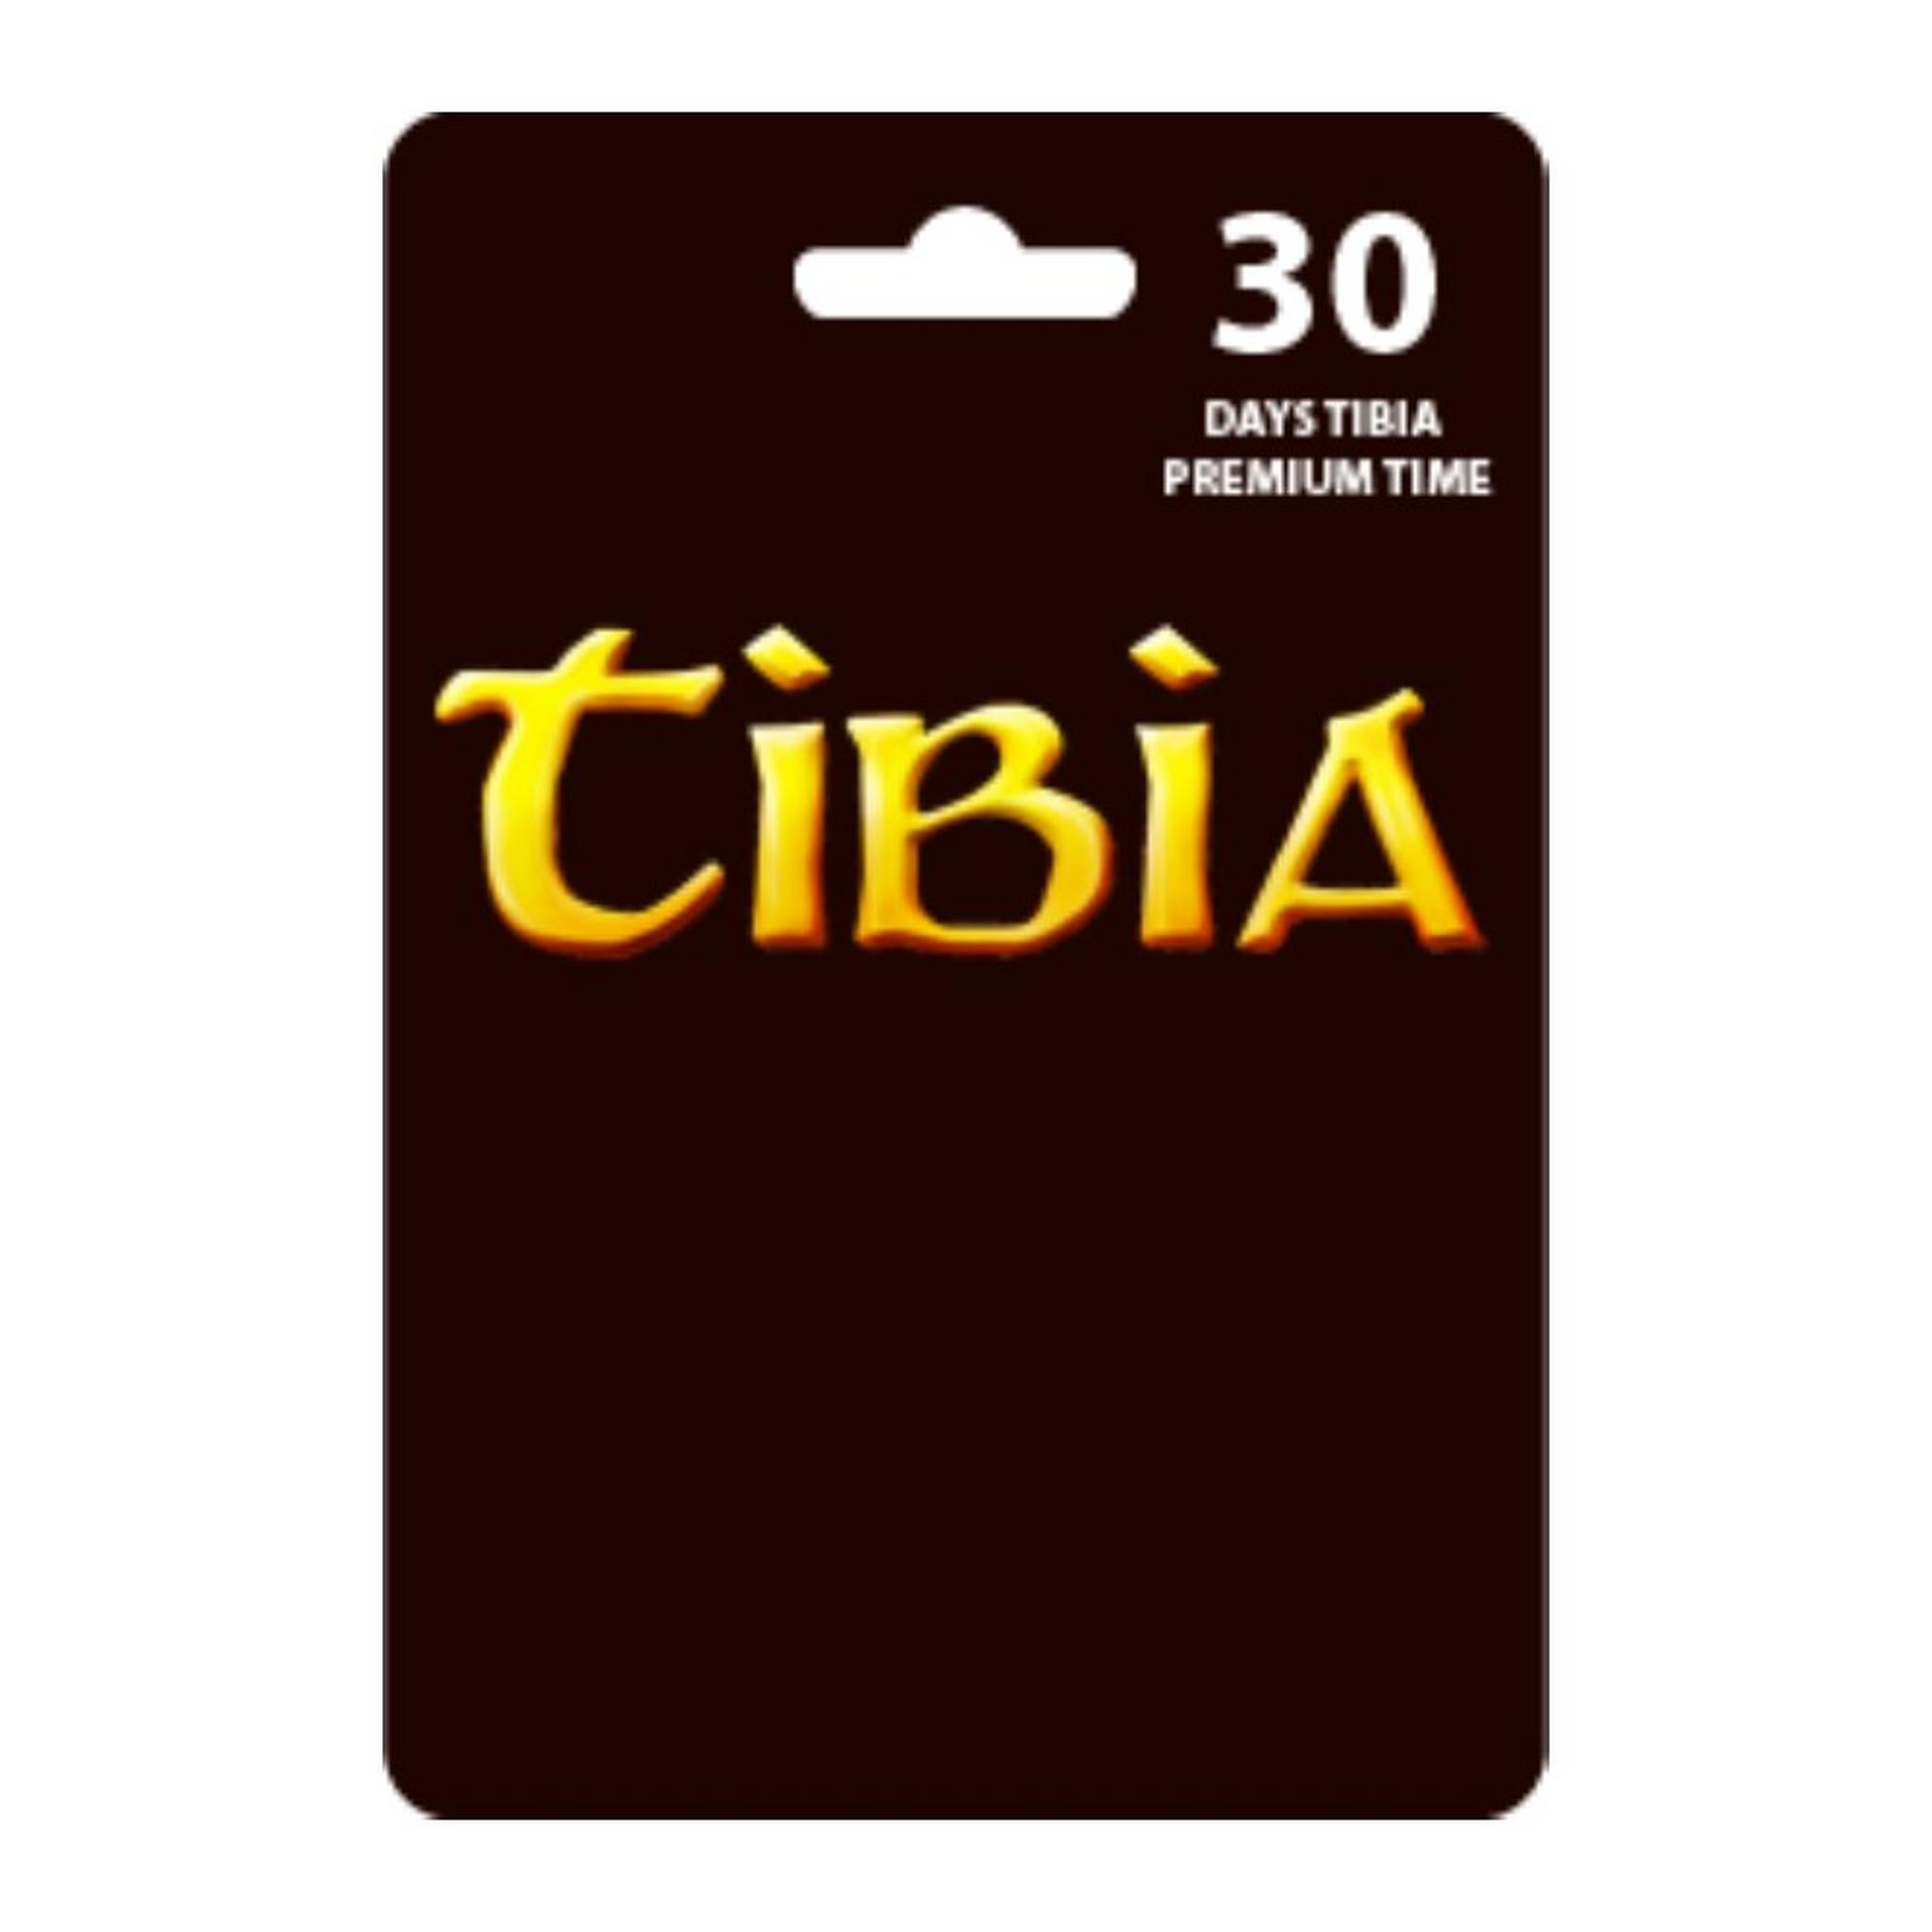 بطاقة تيبيا بريميوم لمدة 30 يوم